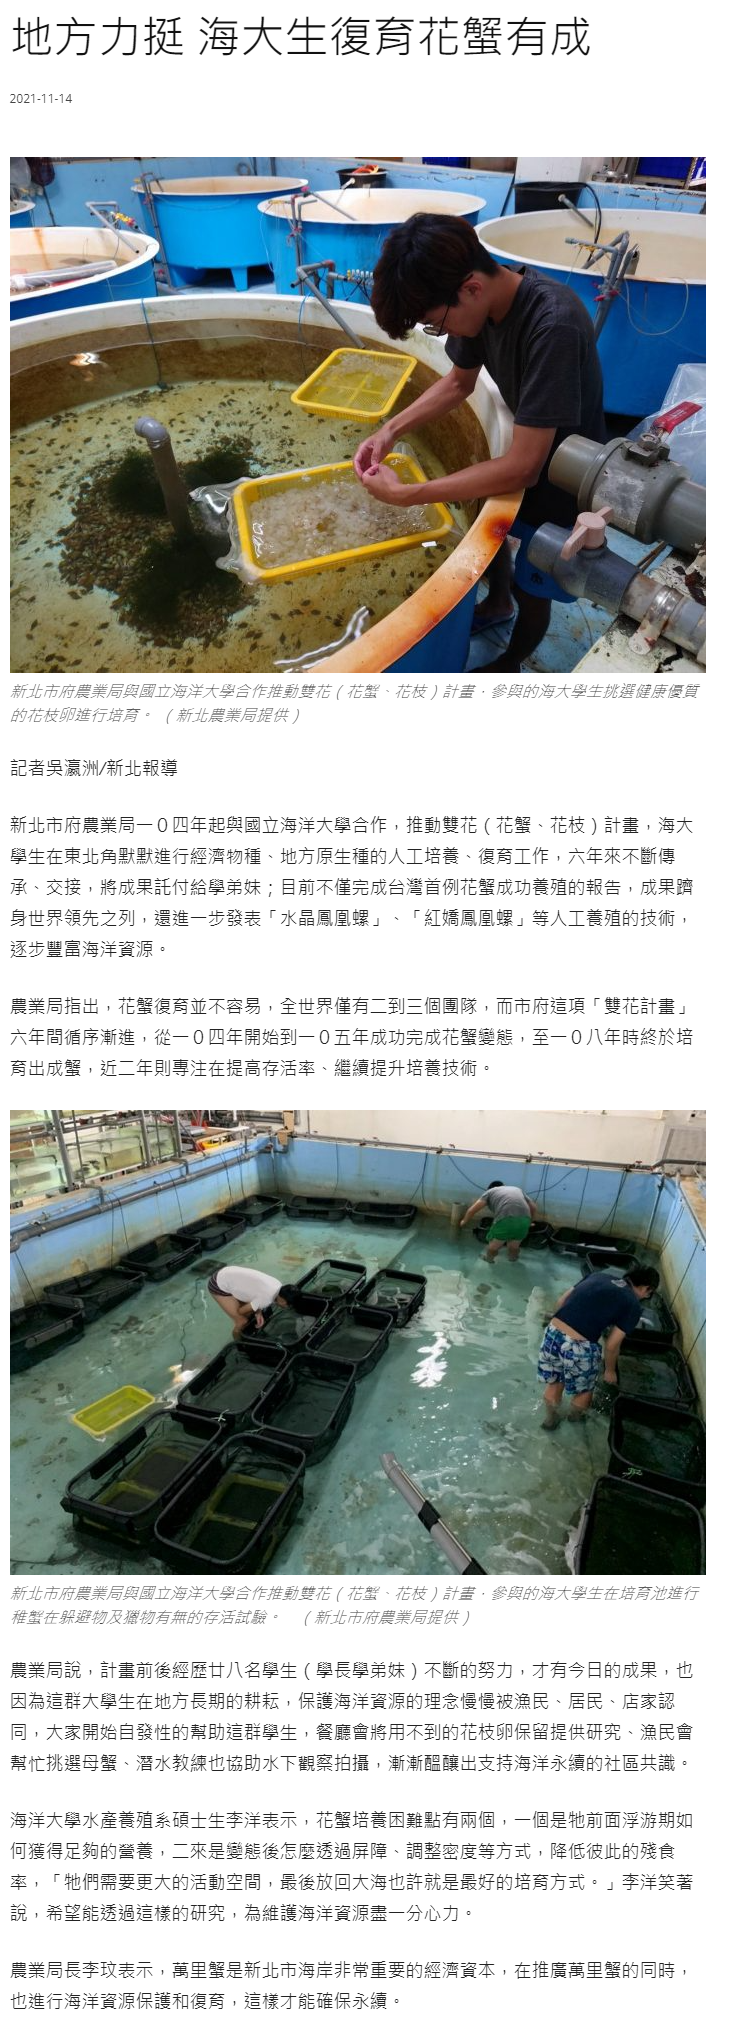 中華日報-地方力挺 海大生復育花蟹有成 